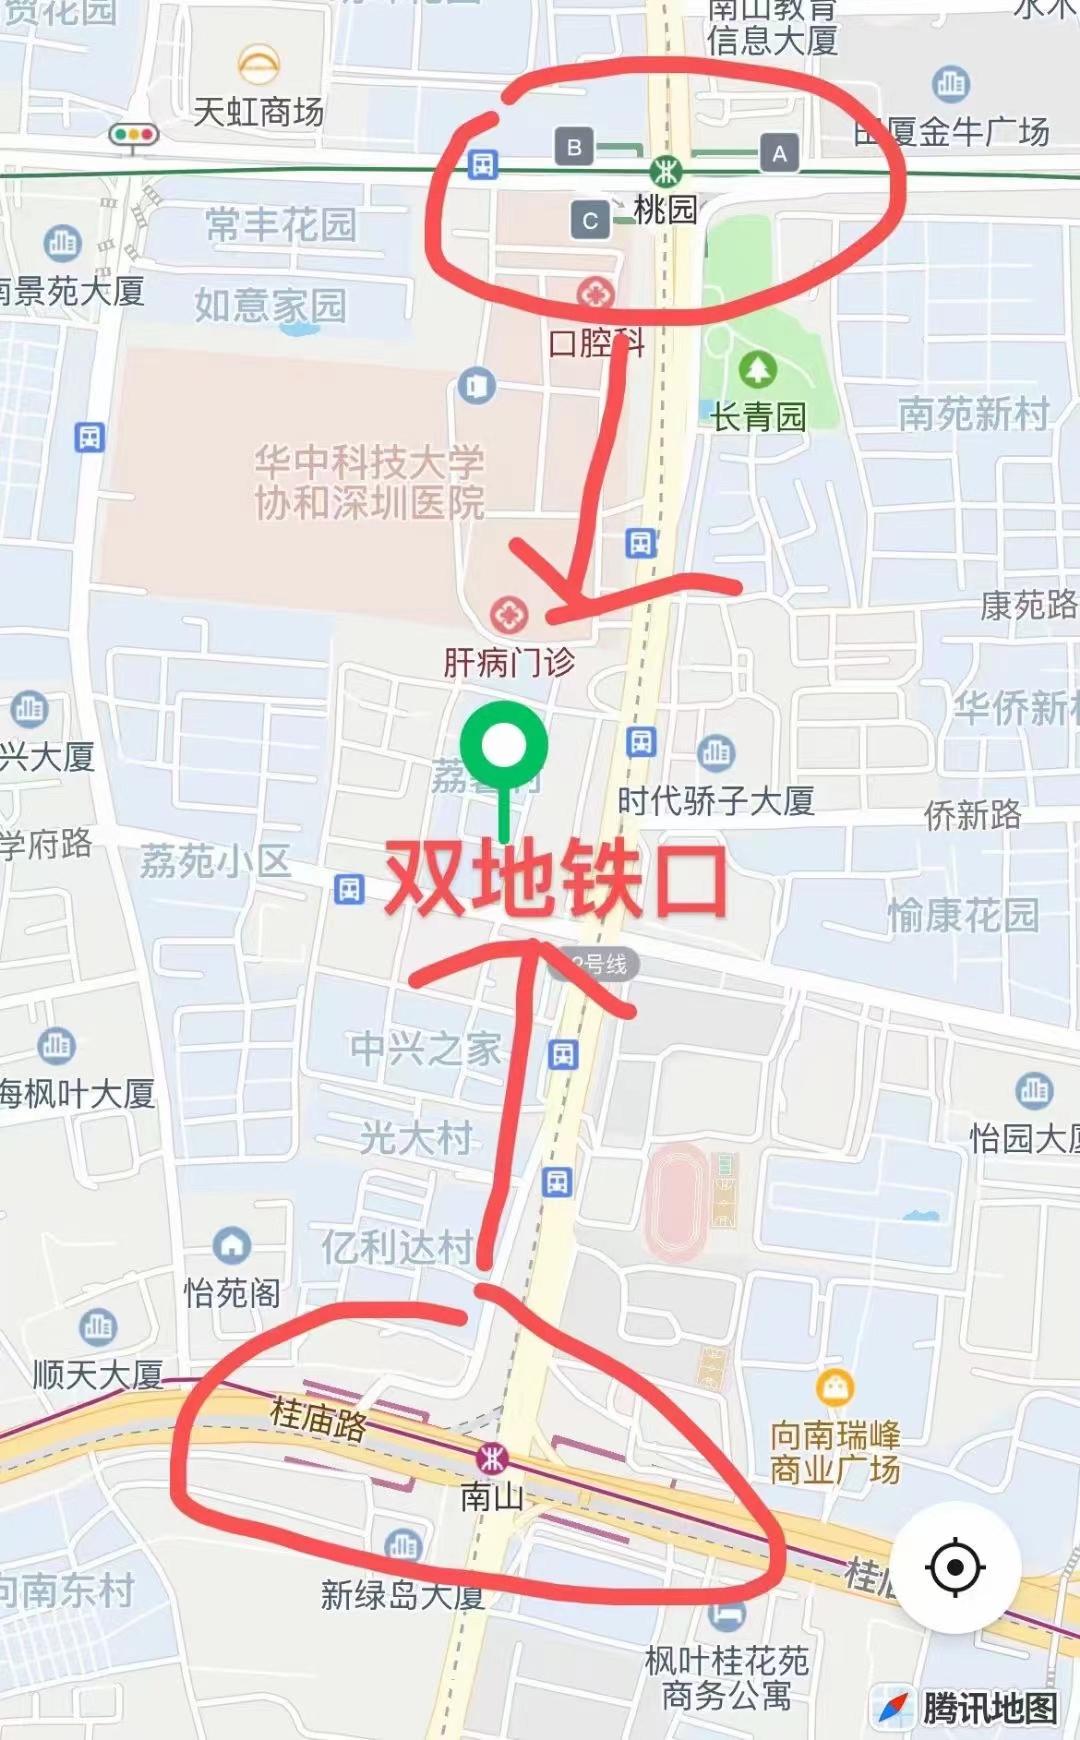 南山荔馨村四栋社区【荔馨苑】地铁口300米